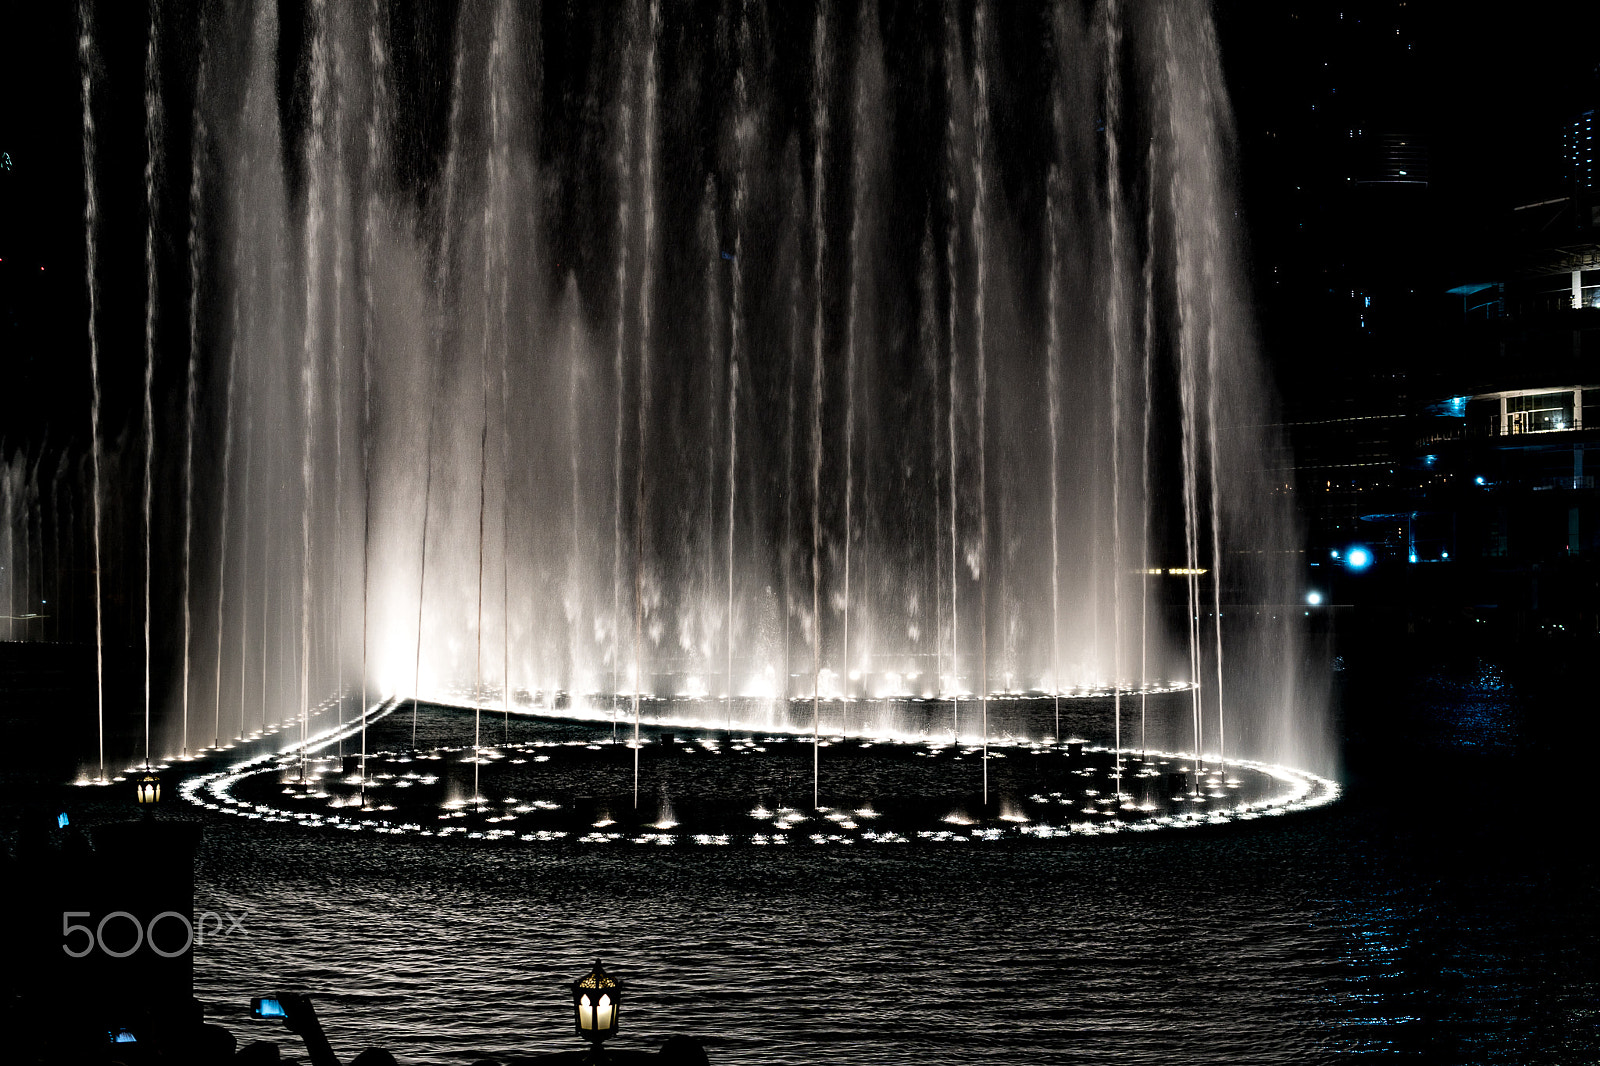 Sony a6500 sample photo. Dubai fountain photography